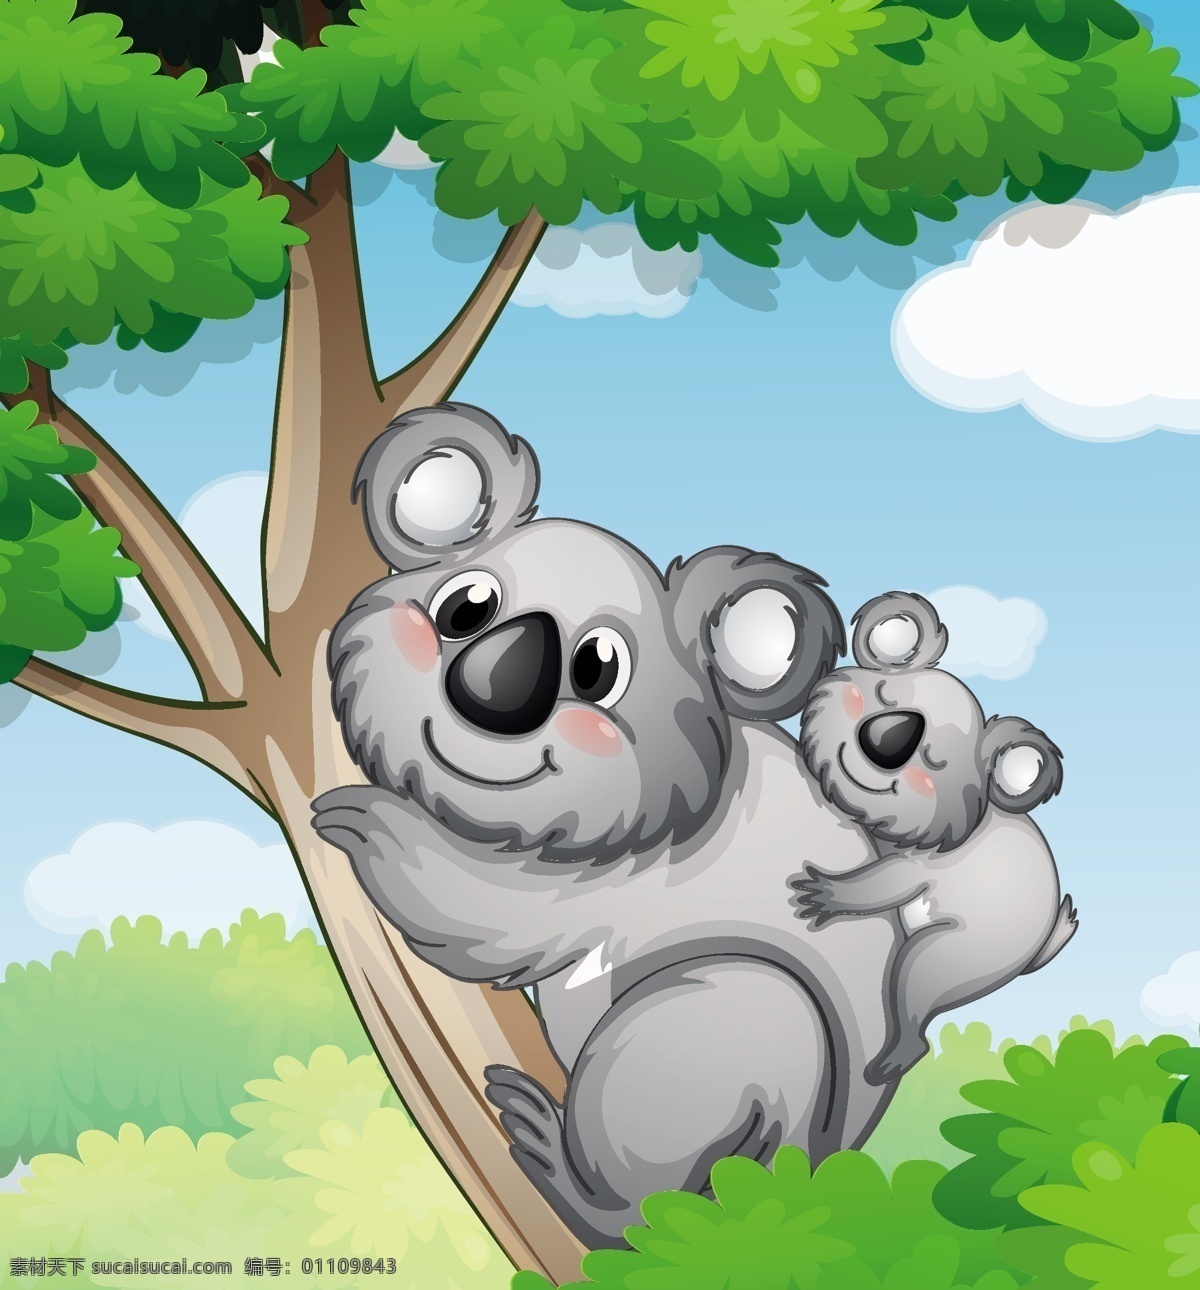 卡通考拉 卡通动物 野生动物 考拉 父母之爱 考拉爬树 动物 生物世界